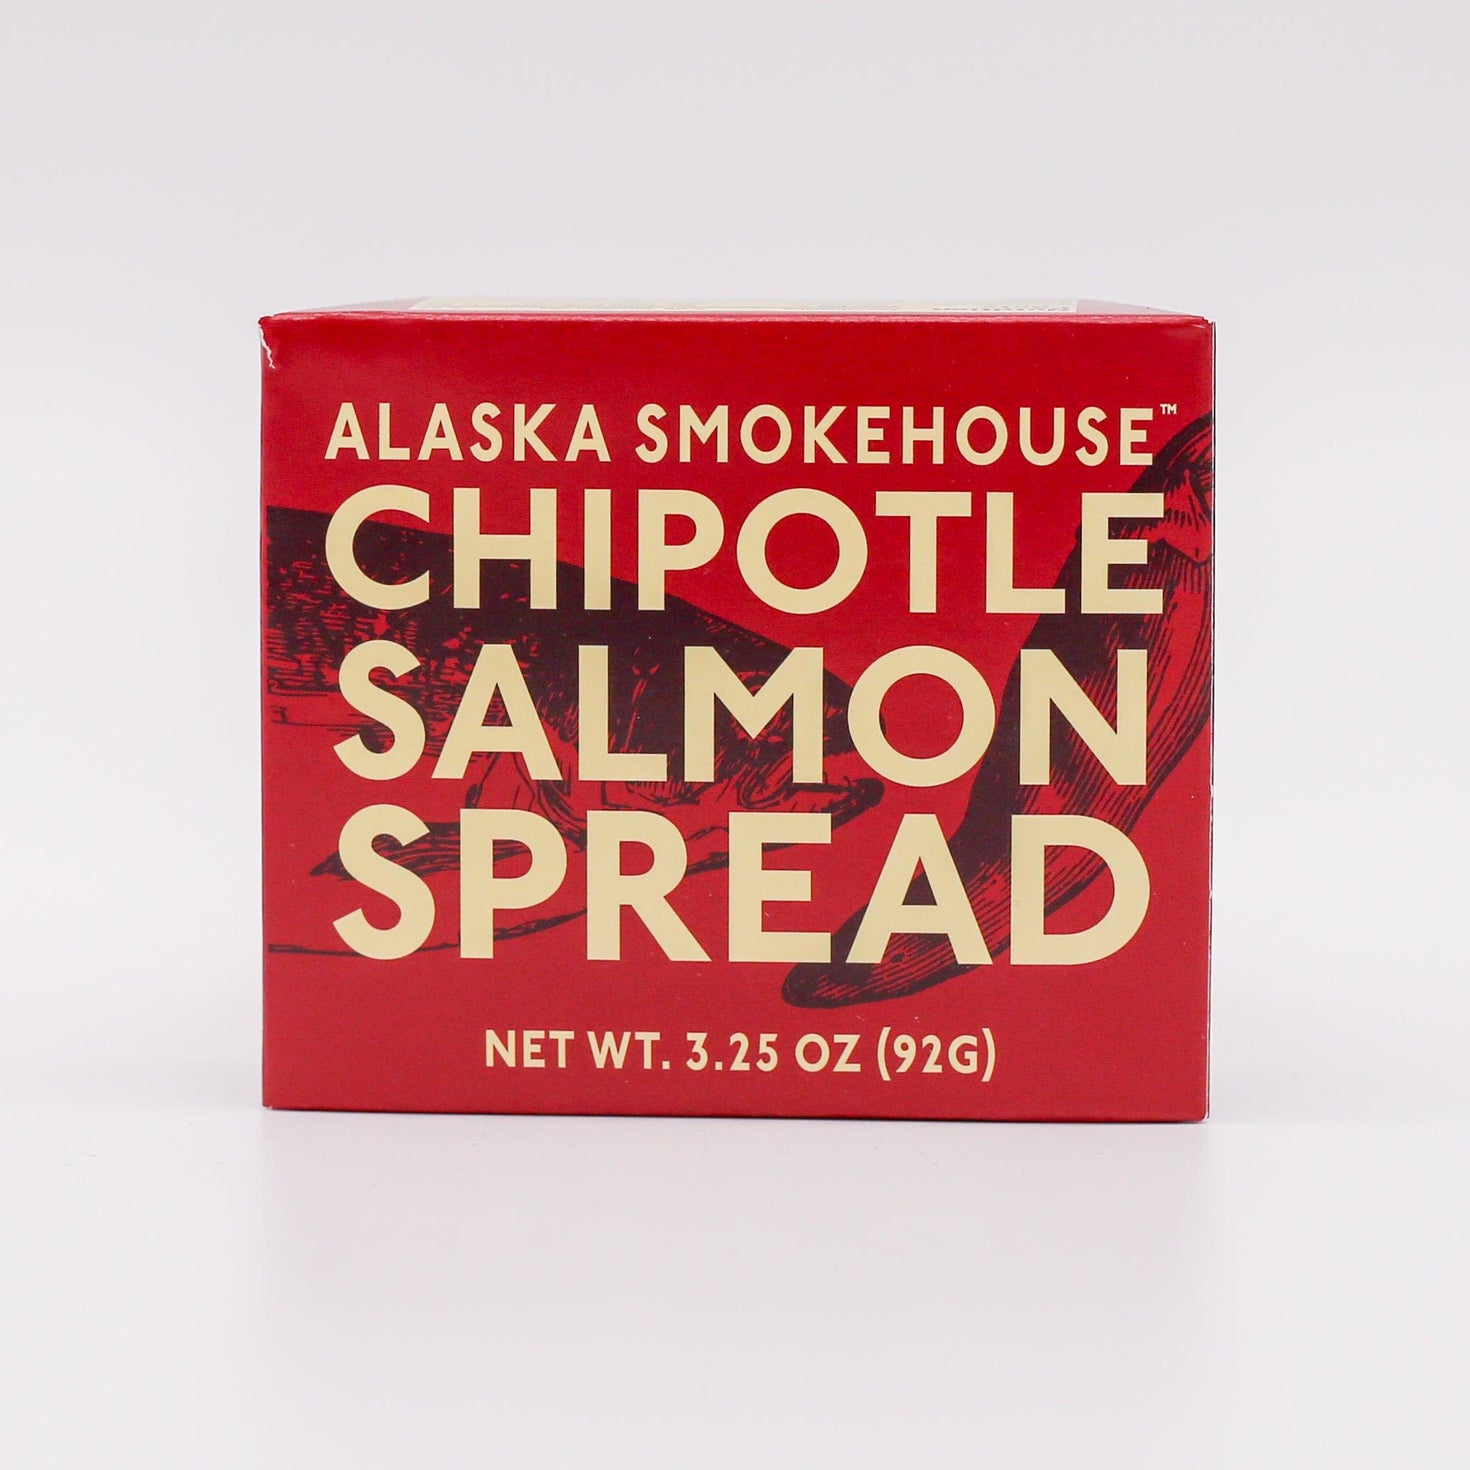 Alaska Smokehouse Chipotle Salmon Spread 3.25oz